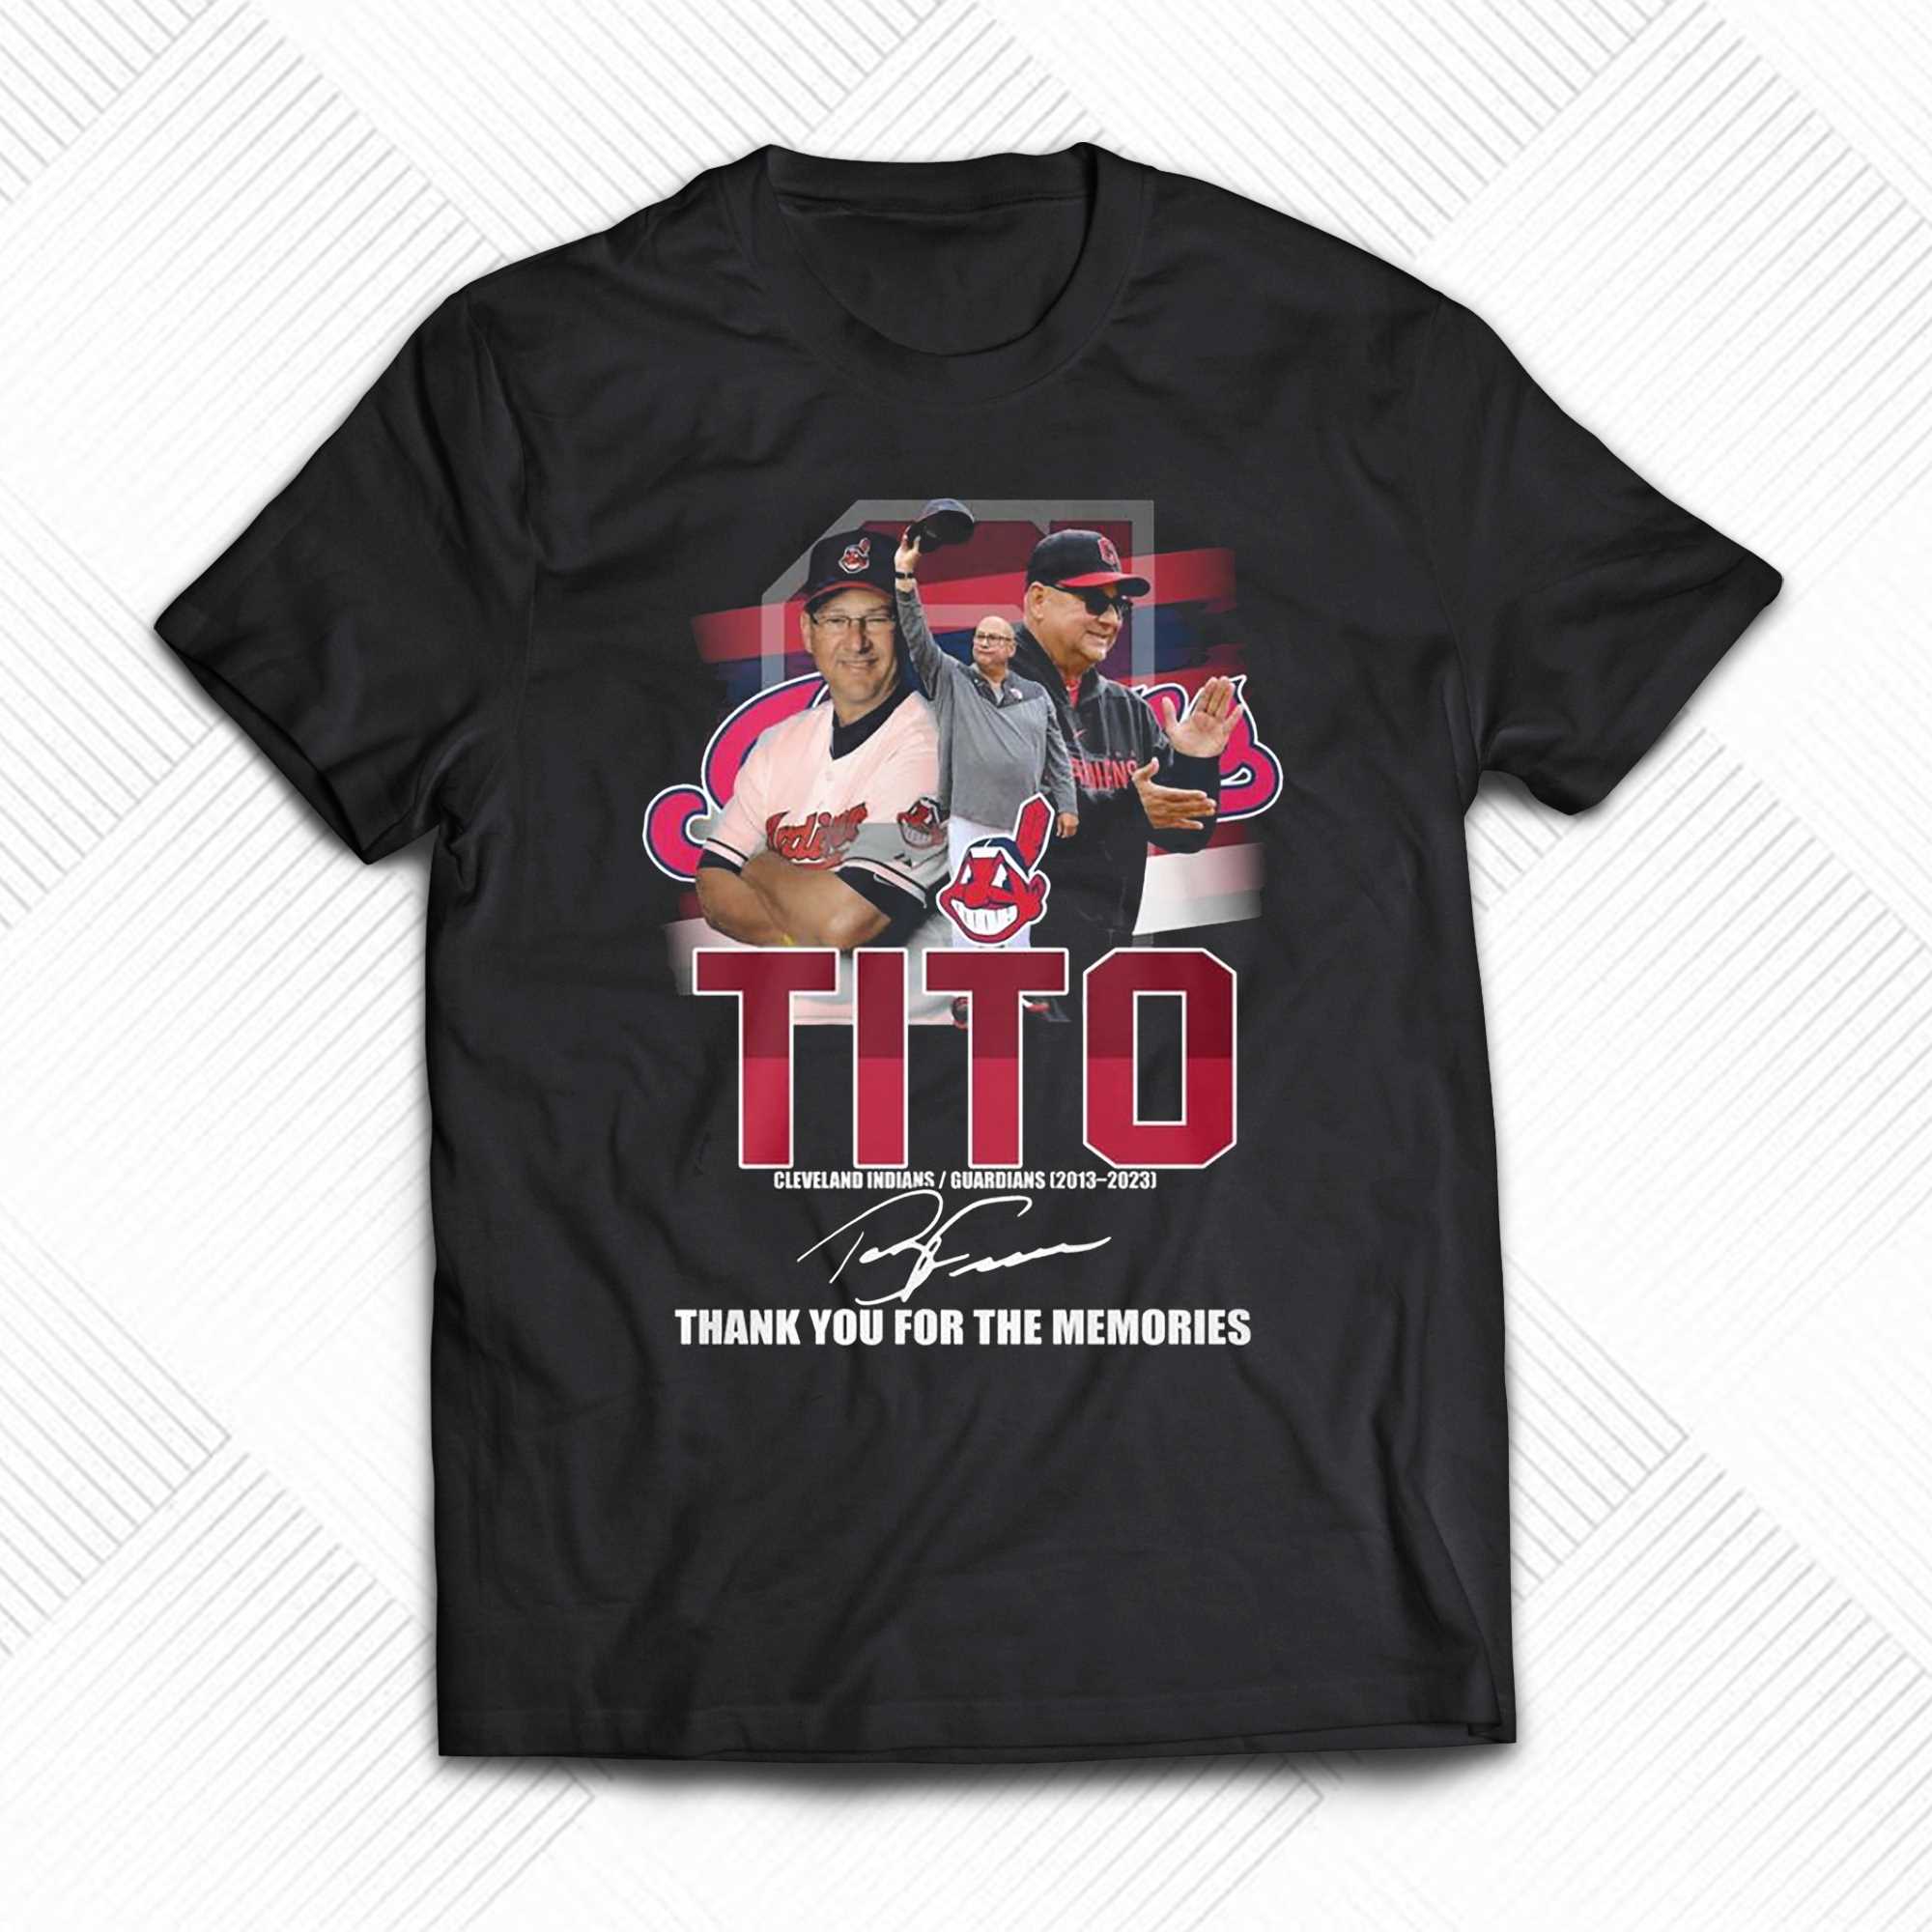 Unique Stylistic Tee Cleveland Indians T-Shirt Black L